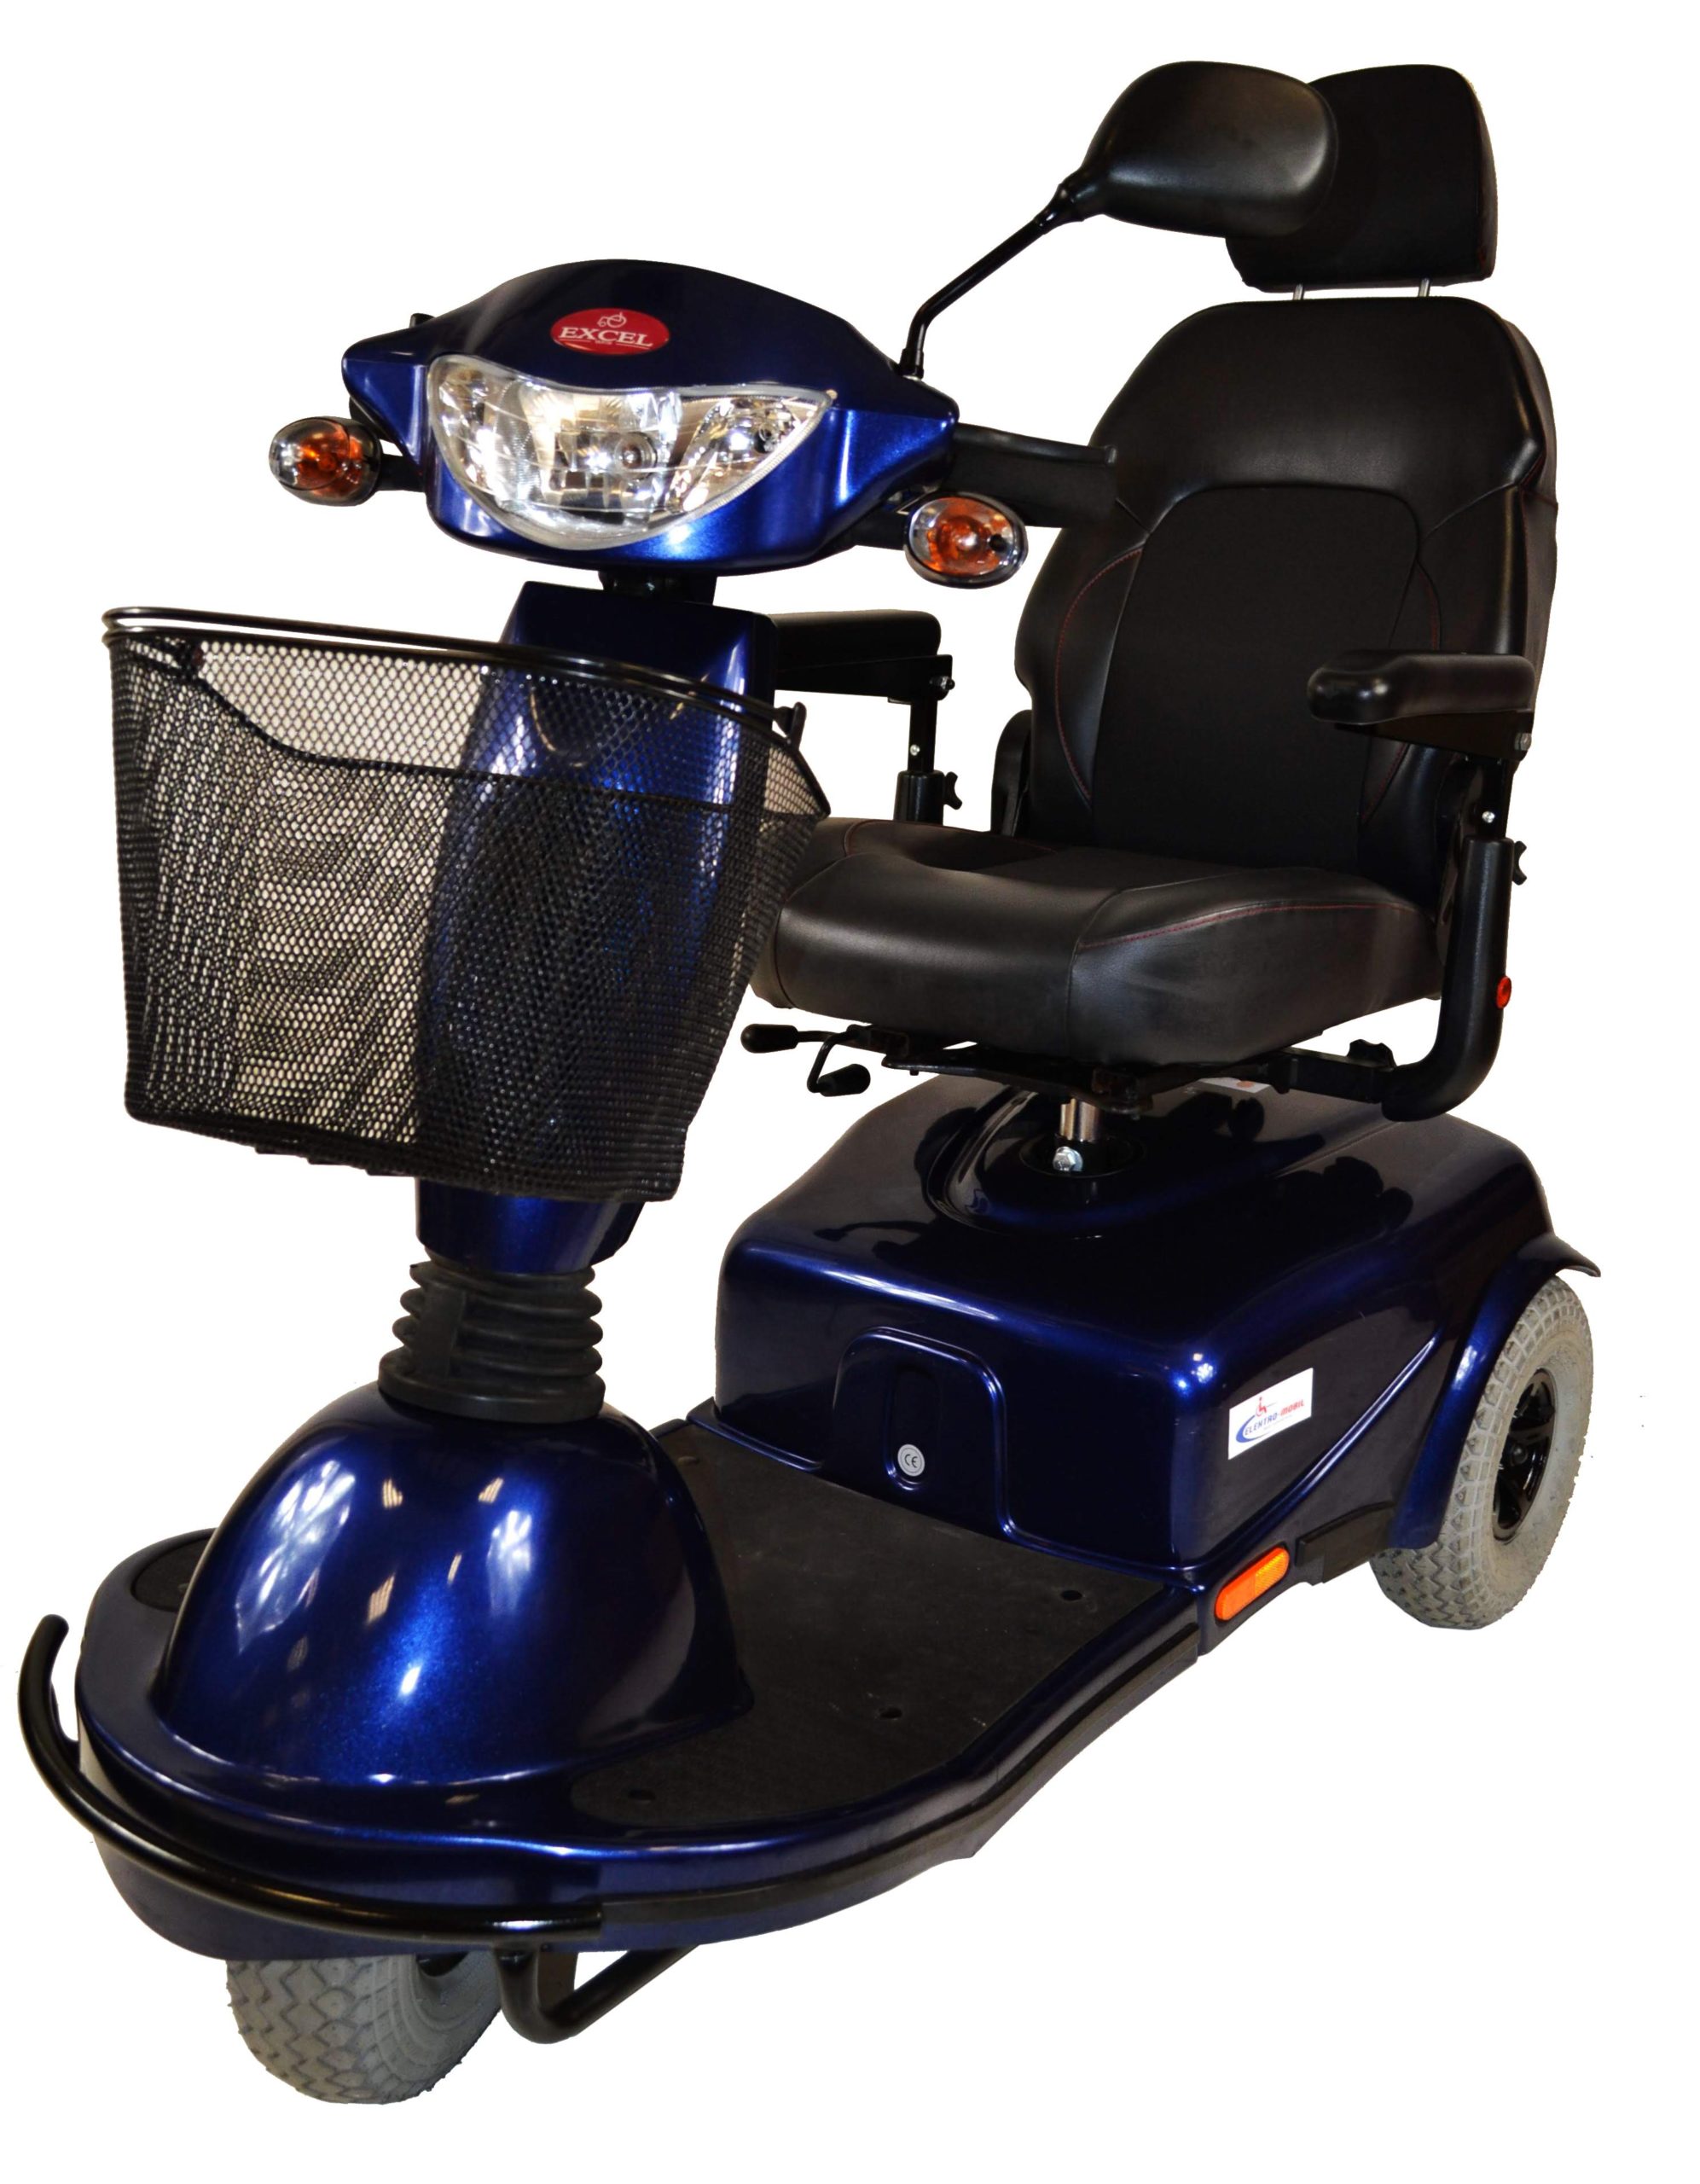 skuter inwalidzki elektryczny exel excite dla seniora